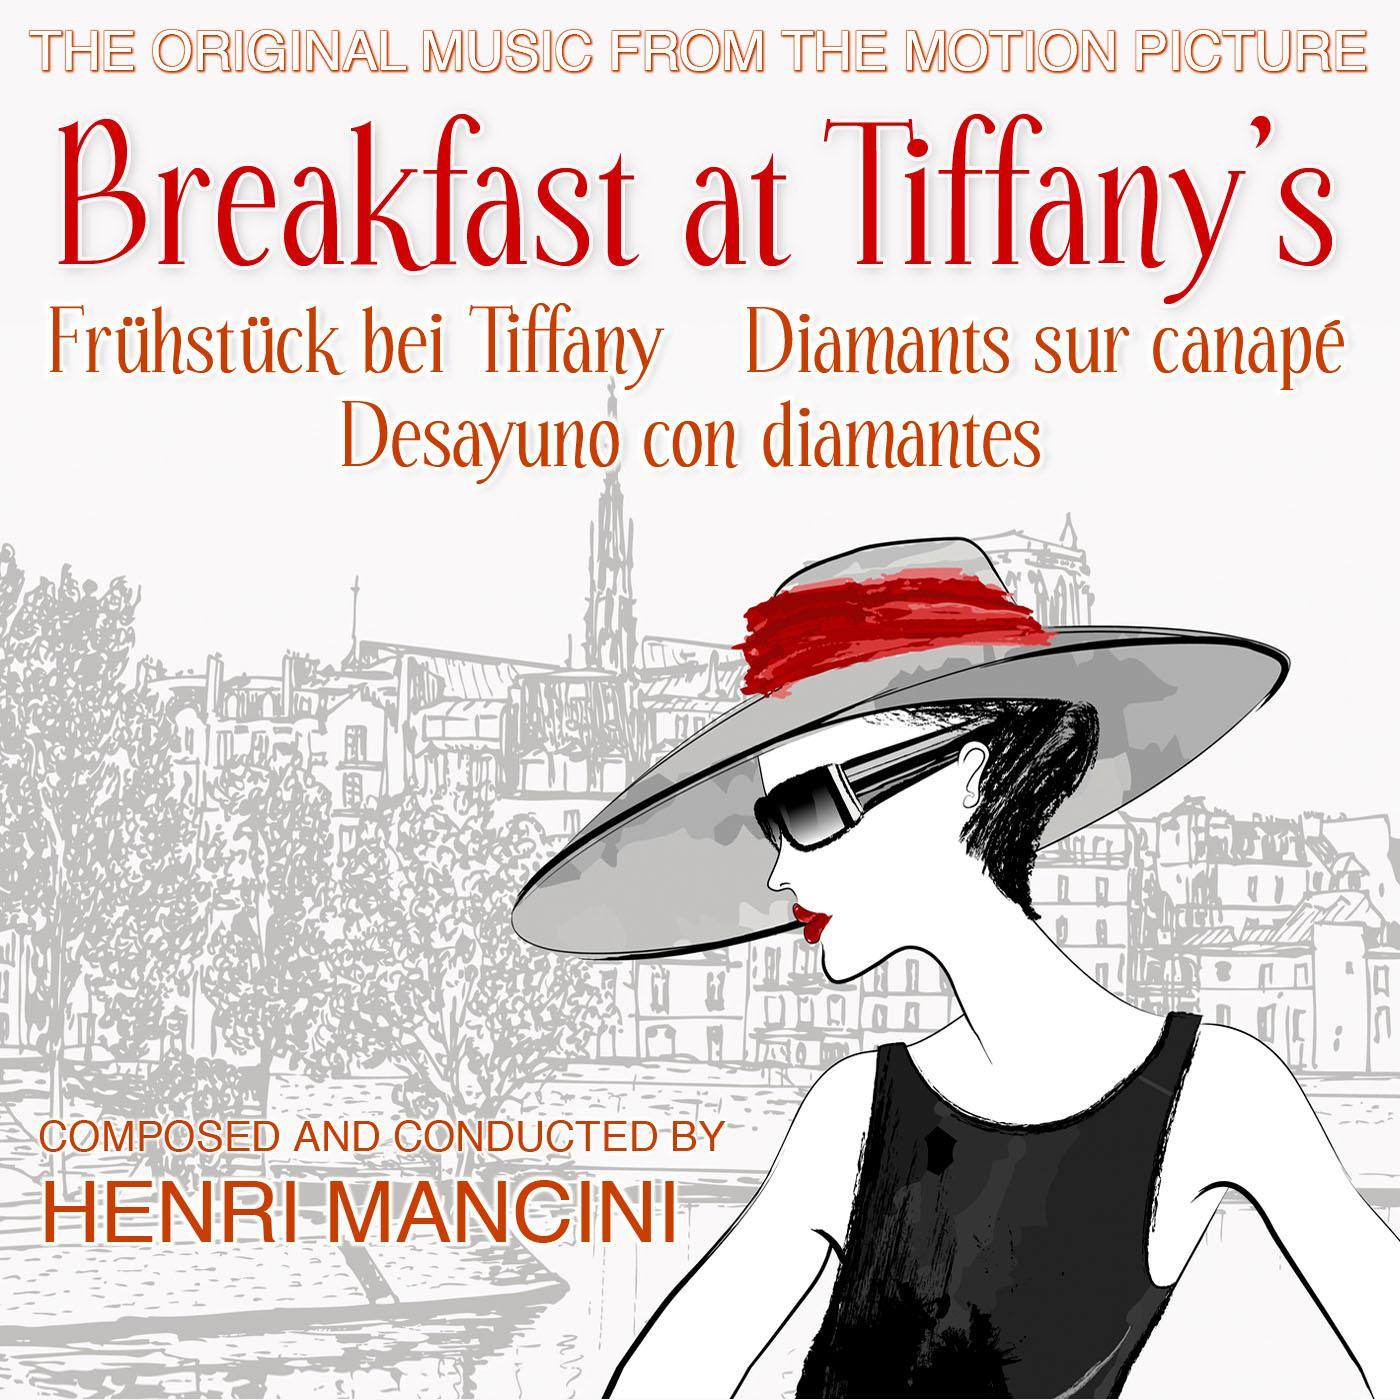 Breakfast At Tiffany' s  Frü hstü ck bei Tiffany  Diamants sur canape  Desayuno con diamantes